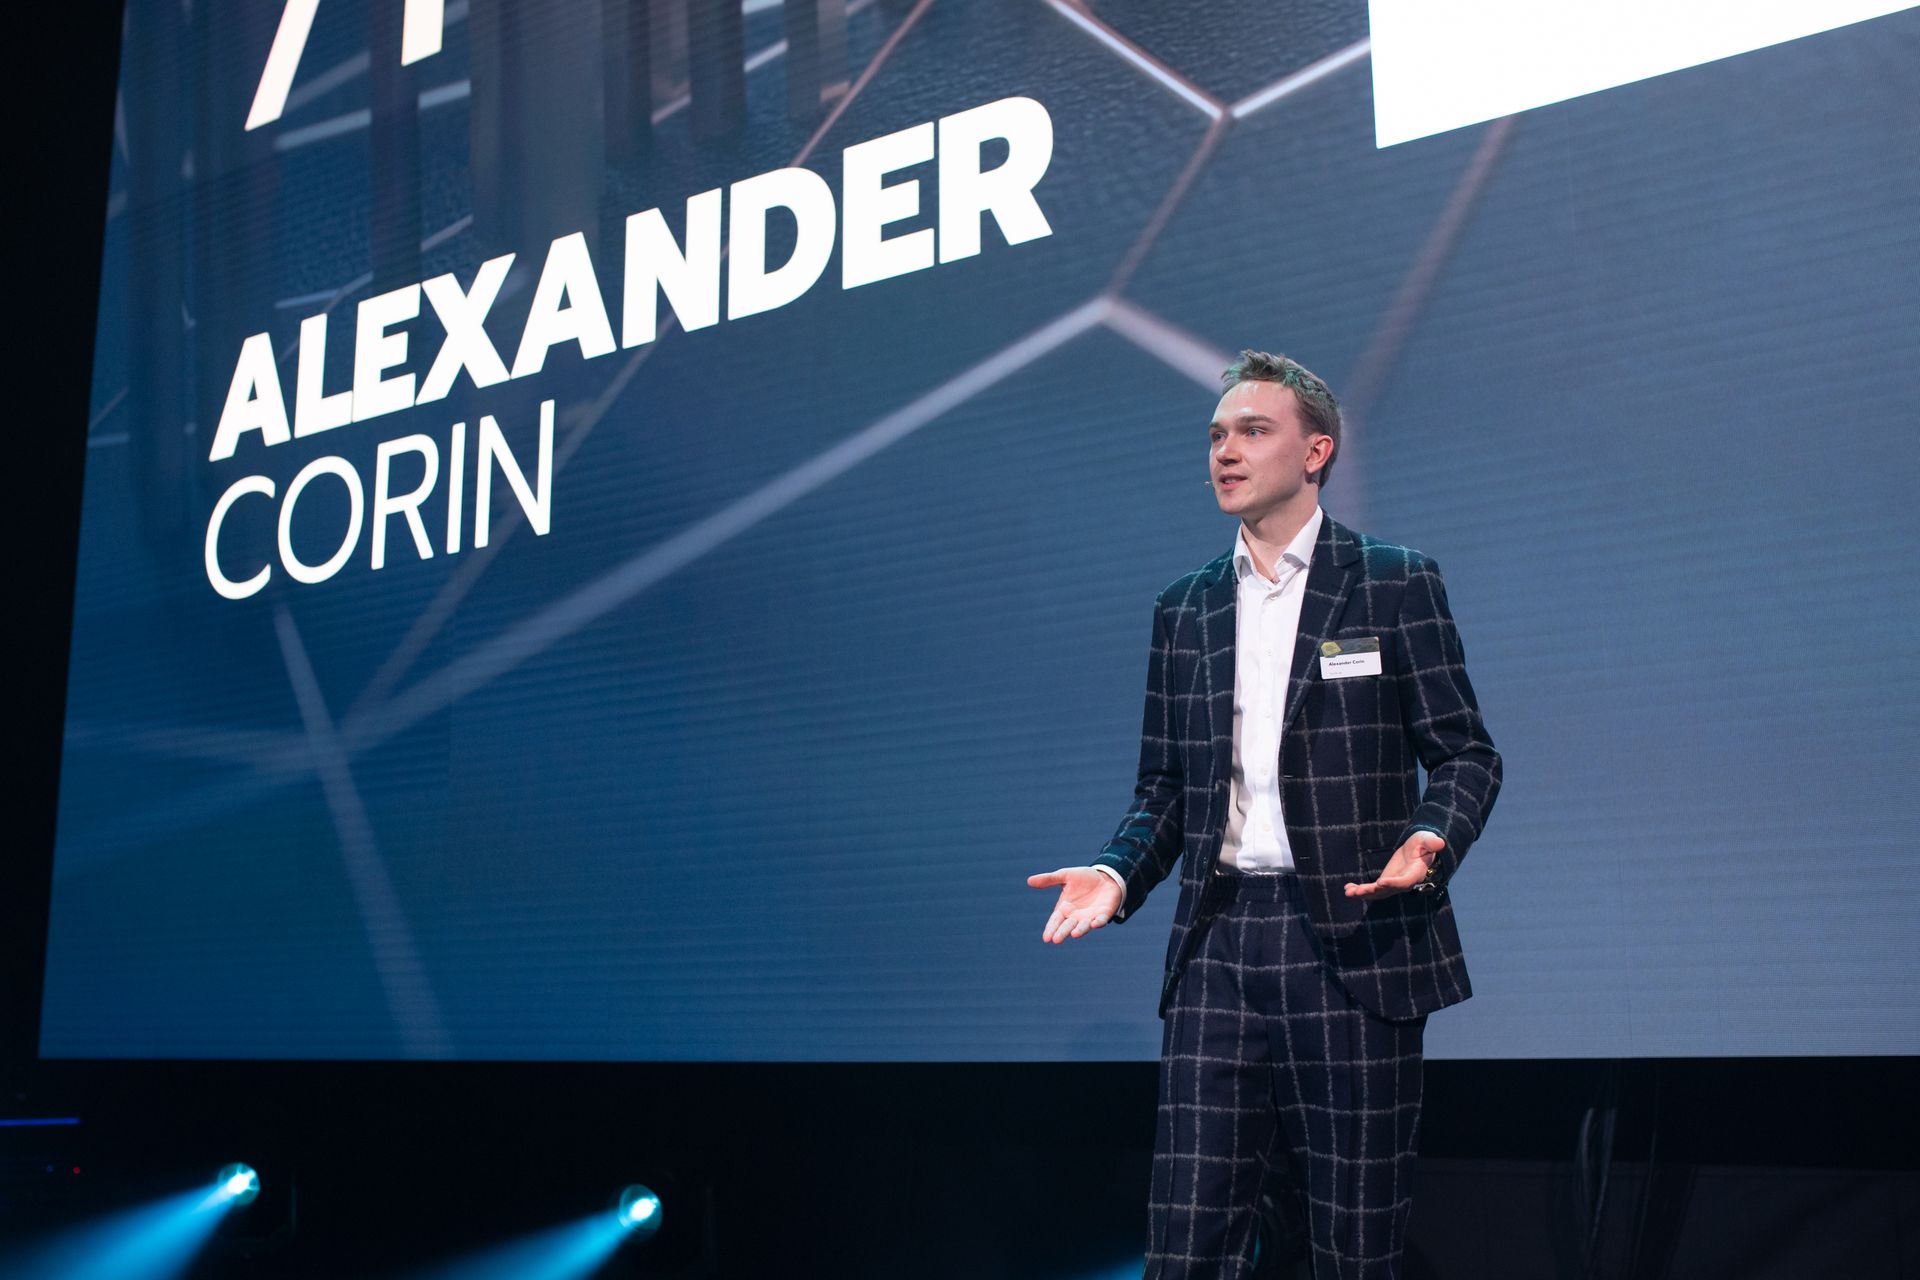 Александр Корин, «Nextgen Hero» классификациясының иегері, Швейцарияның «Digital Economy Award» марапаттау рәсімінде